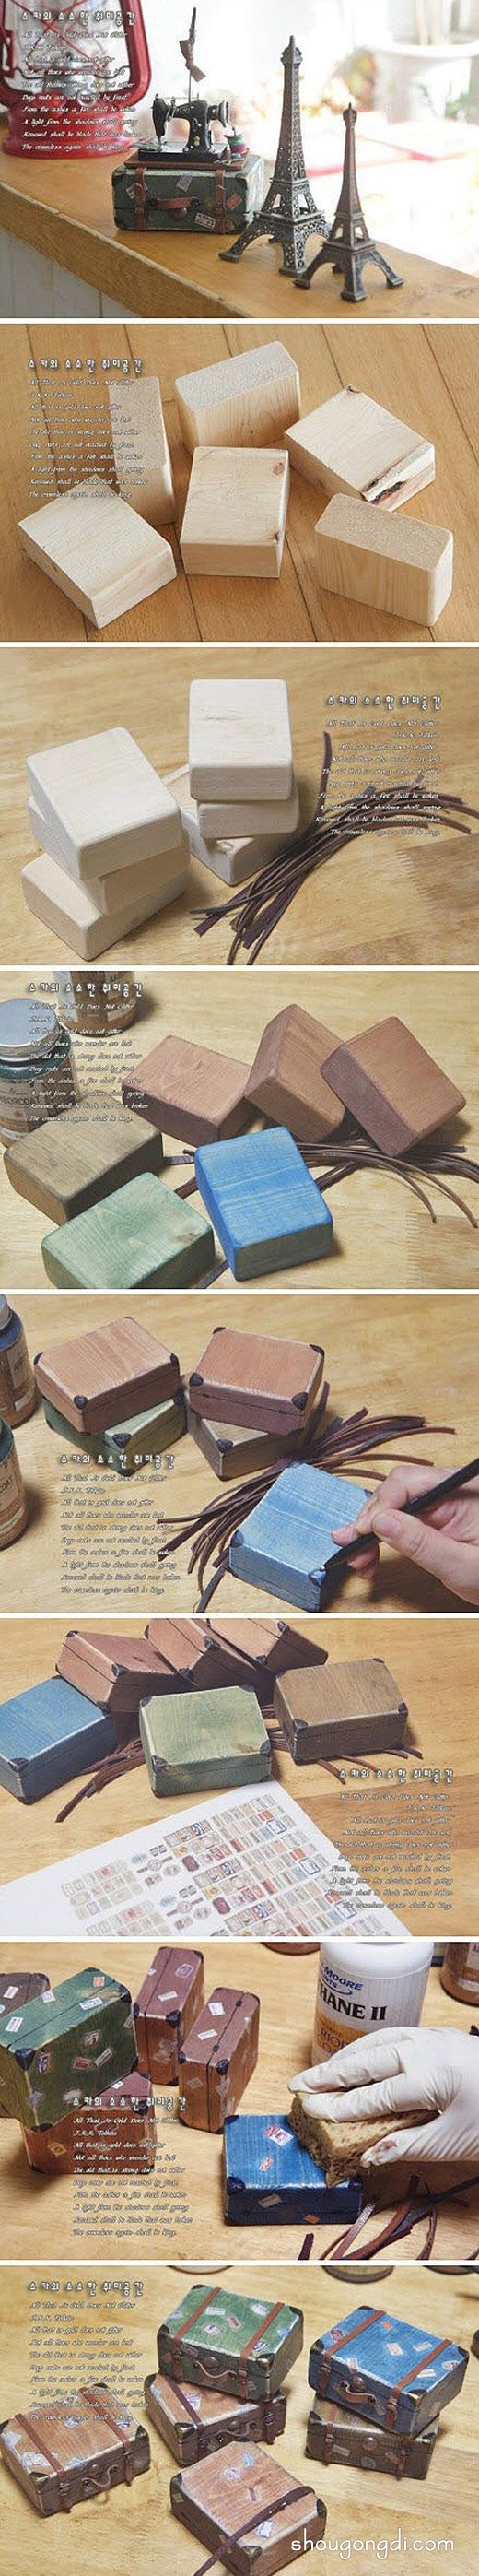 精美絕倫的紙雕作品 讓廢舊的書籍變廢為寶 -  www.shougongdi.com